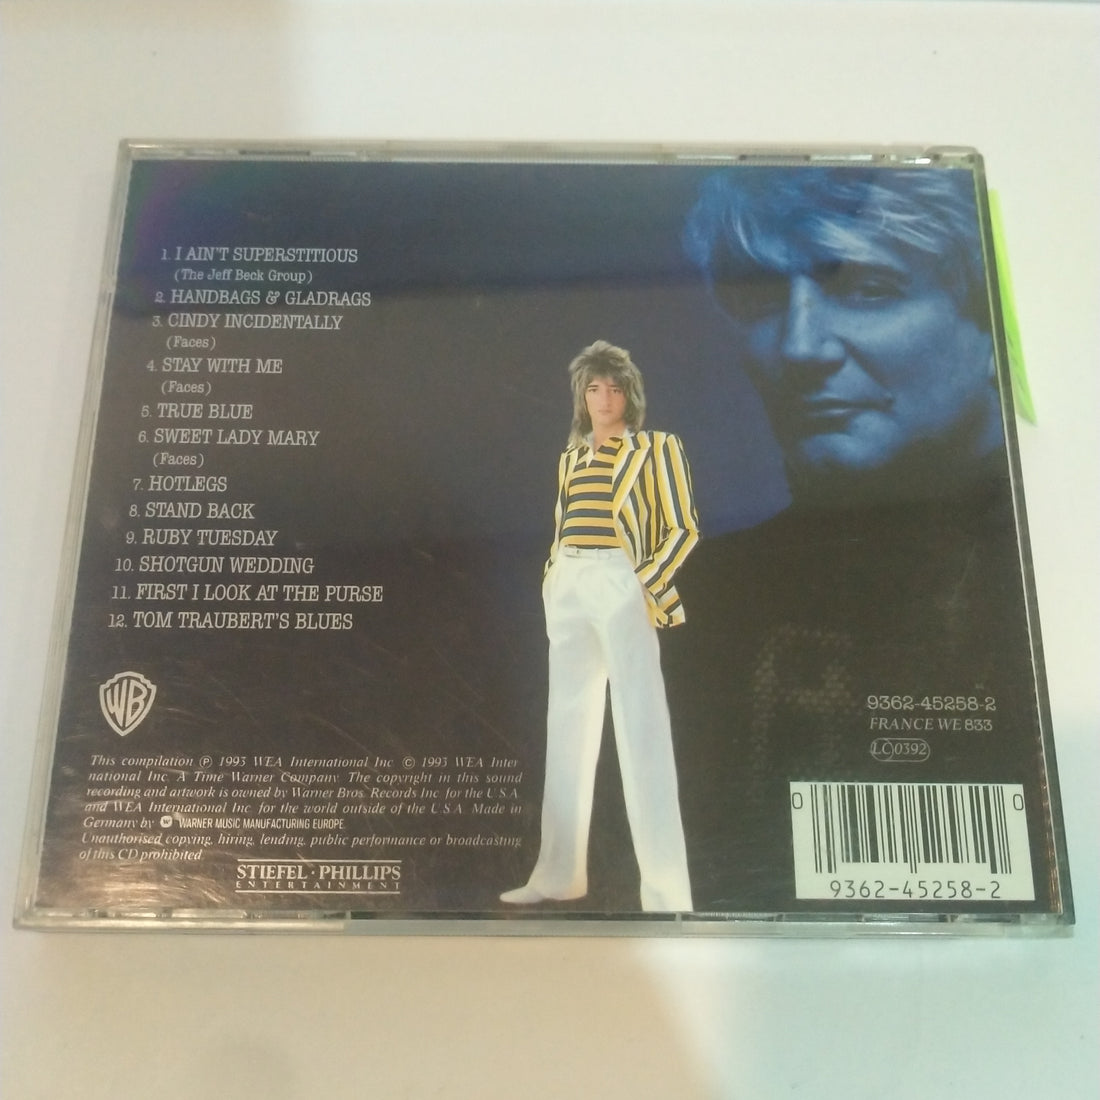 Rod Stewart - Lead Vocalist (CD) (VG+)